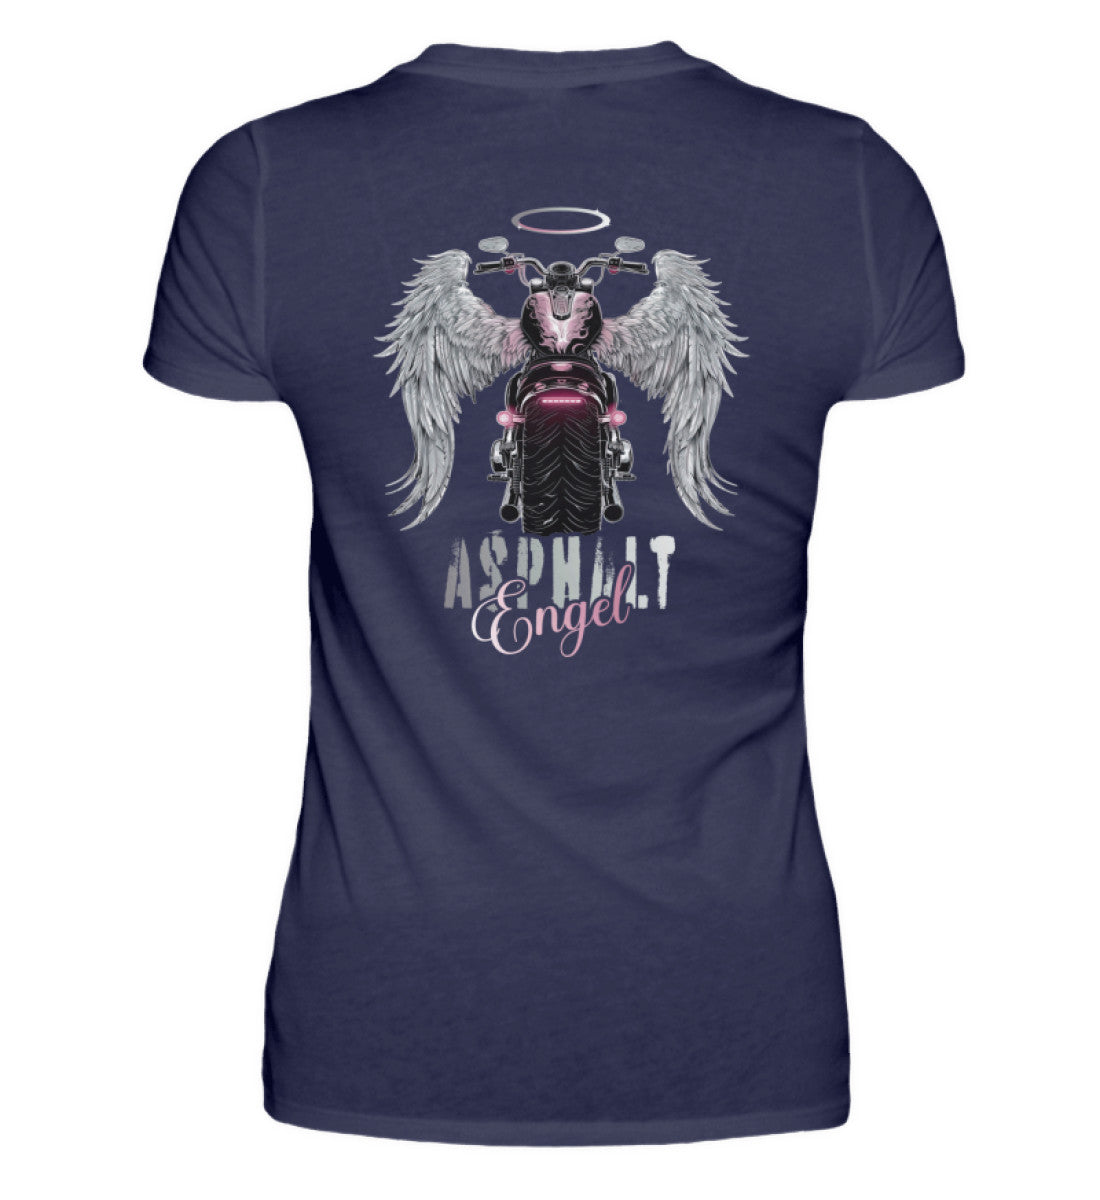 Ein Bikerin T-Shirt für Motorradfahrerinnen von Wingbikers mit dem Aufdruck, Asphalt Engel - mit Flügeln, - mit Back Print, in navy blau.